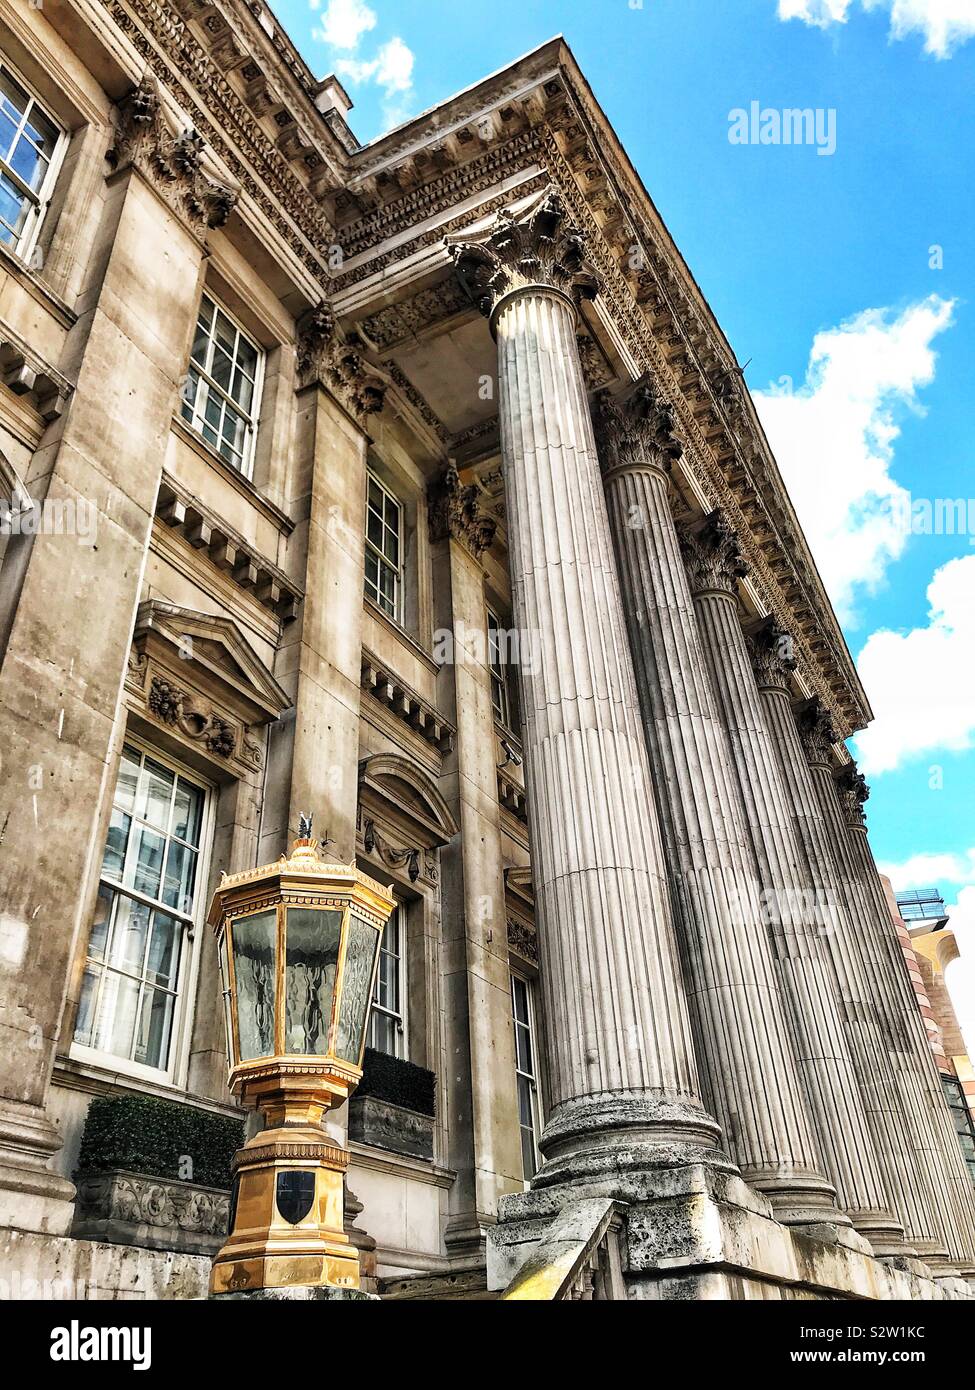 Détail de l'architecture palladienne du 18e siècle, la construction de maisons dans la ville de Londres. Banque D'Images